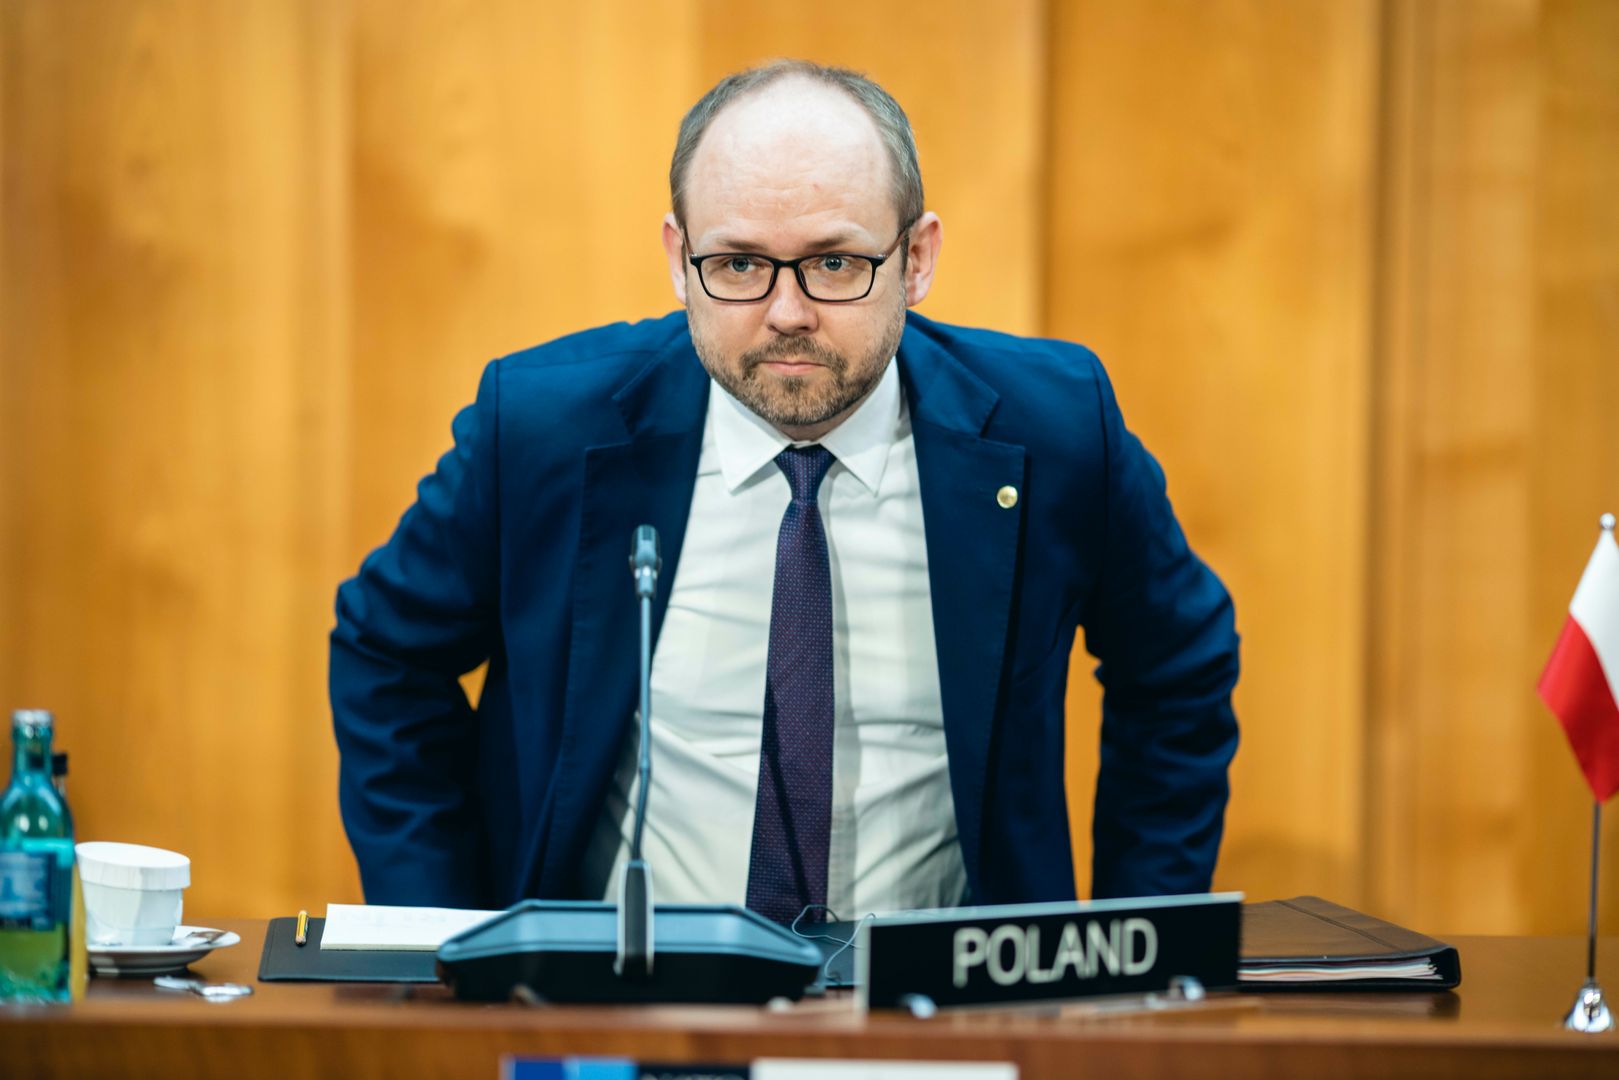 Глава Бюро международной политики при президенте Польши Марчин Пшидач